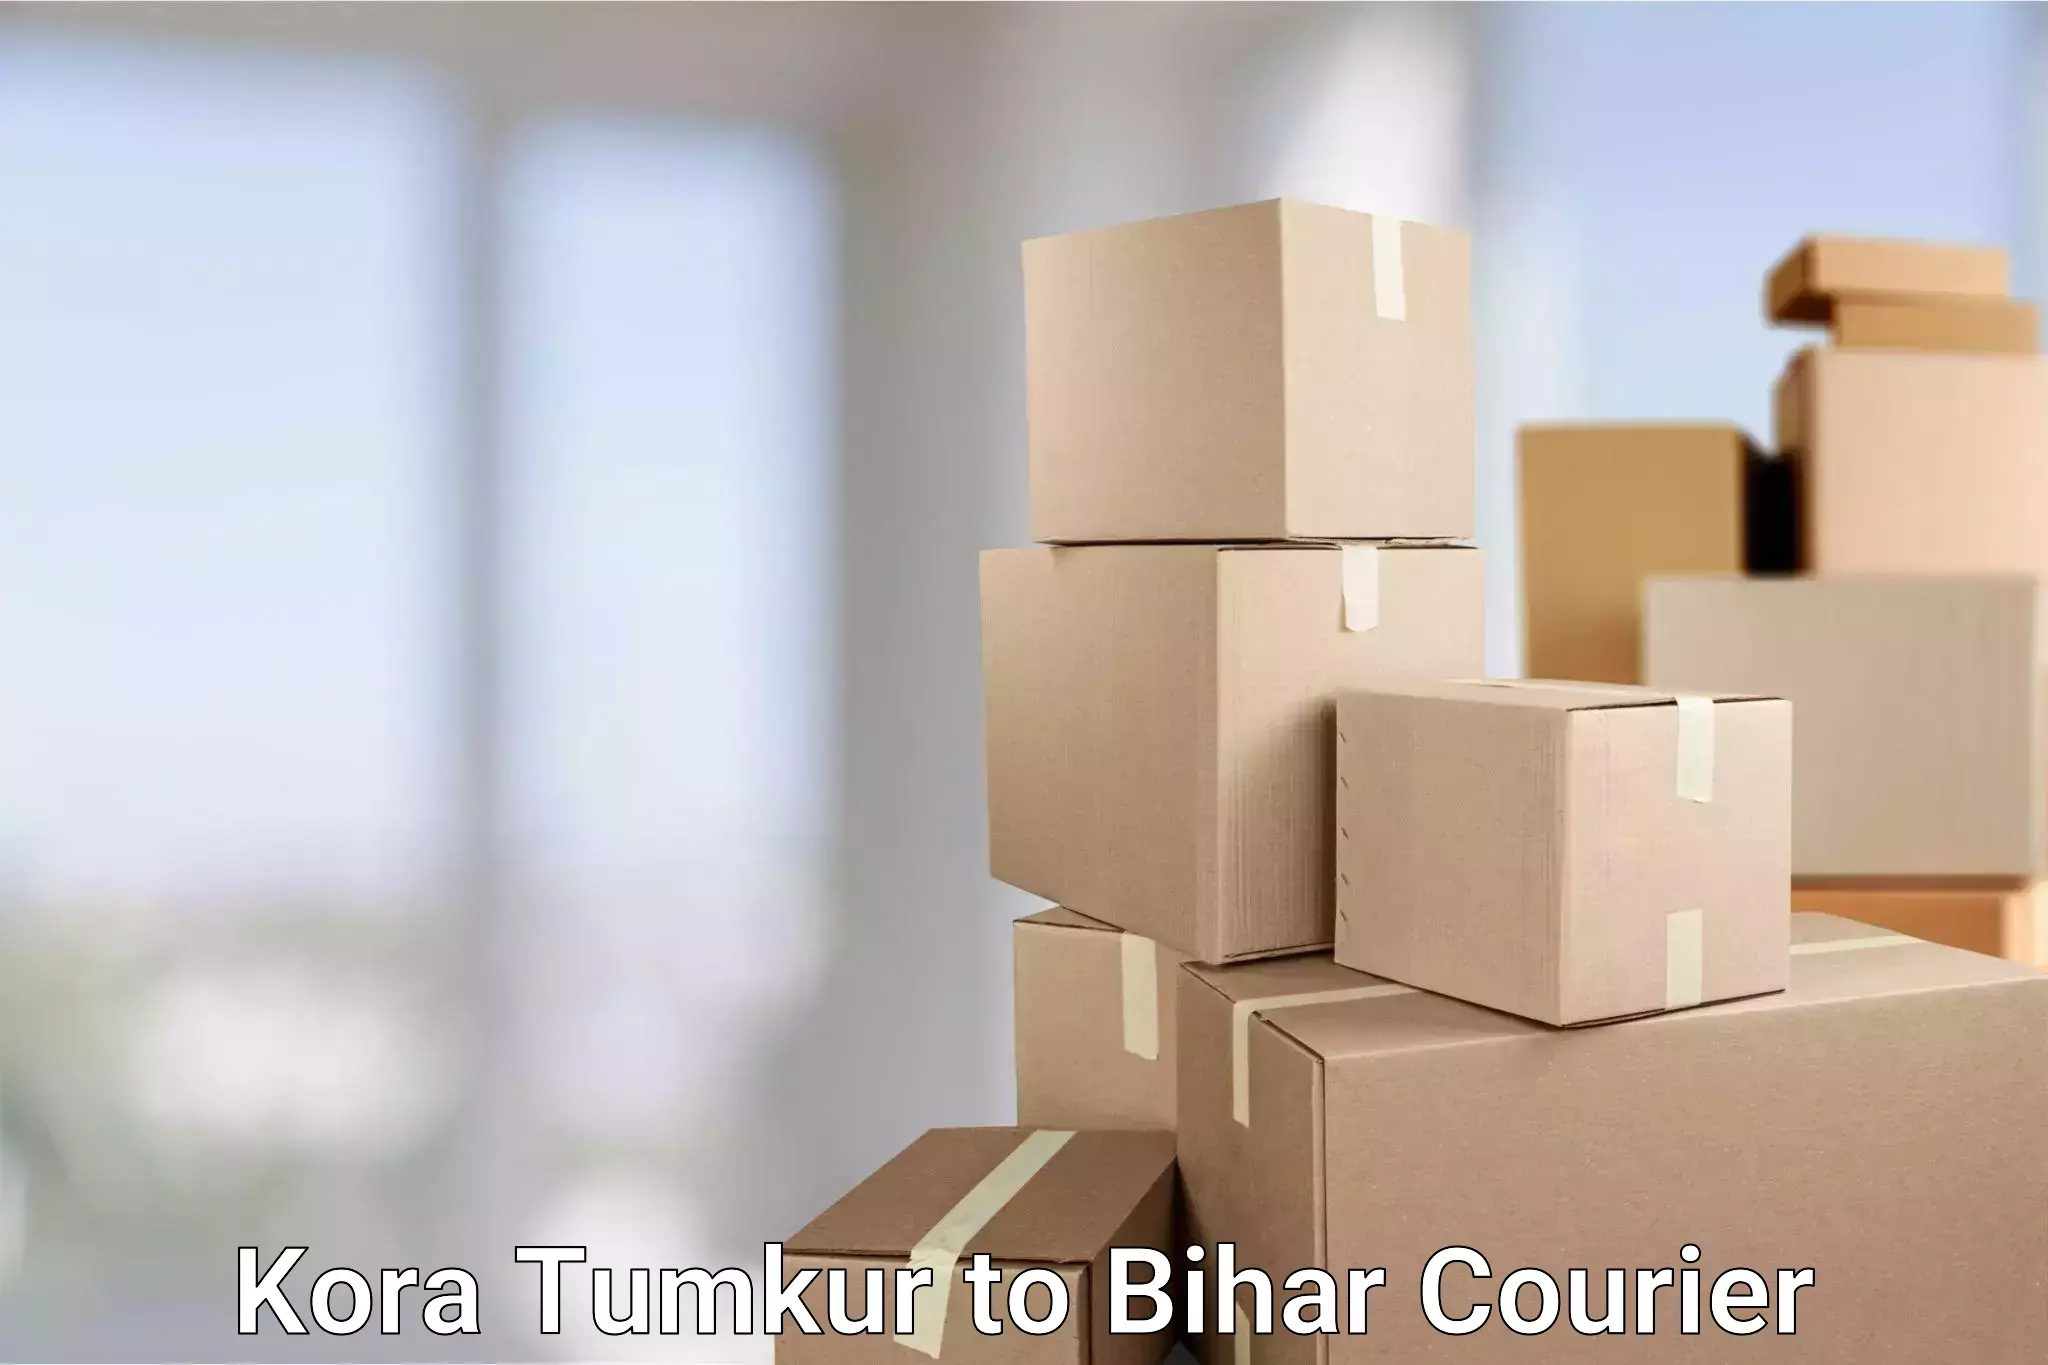 Special handling courier Kora Tumkur to Tekari